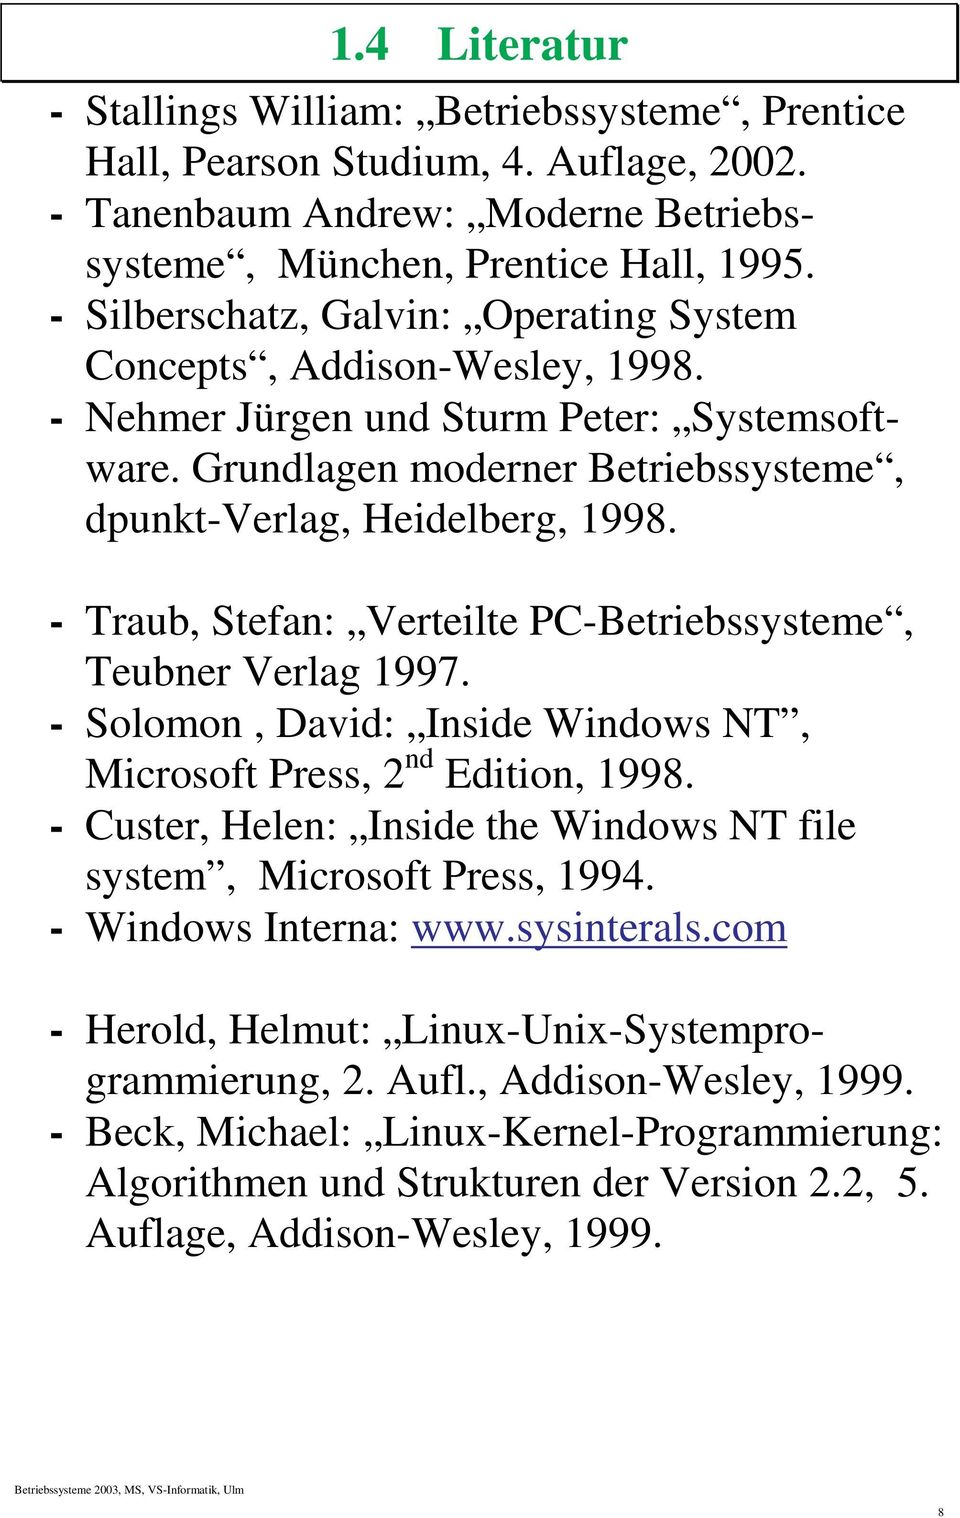 - Traub, Stefan: Verteilte PC-Betriebssysteme, Teubner Verlag 1997. - Solomon, David: Inside Windows NT, Microsoft Press, 2 nd Edition, 1998.